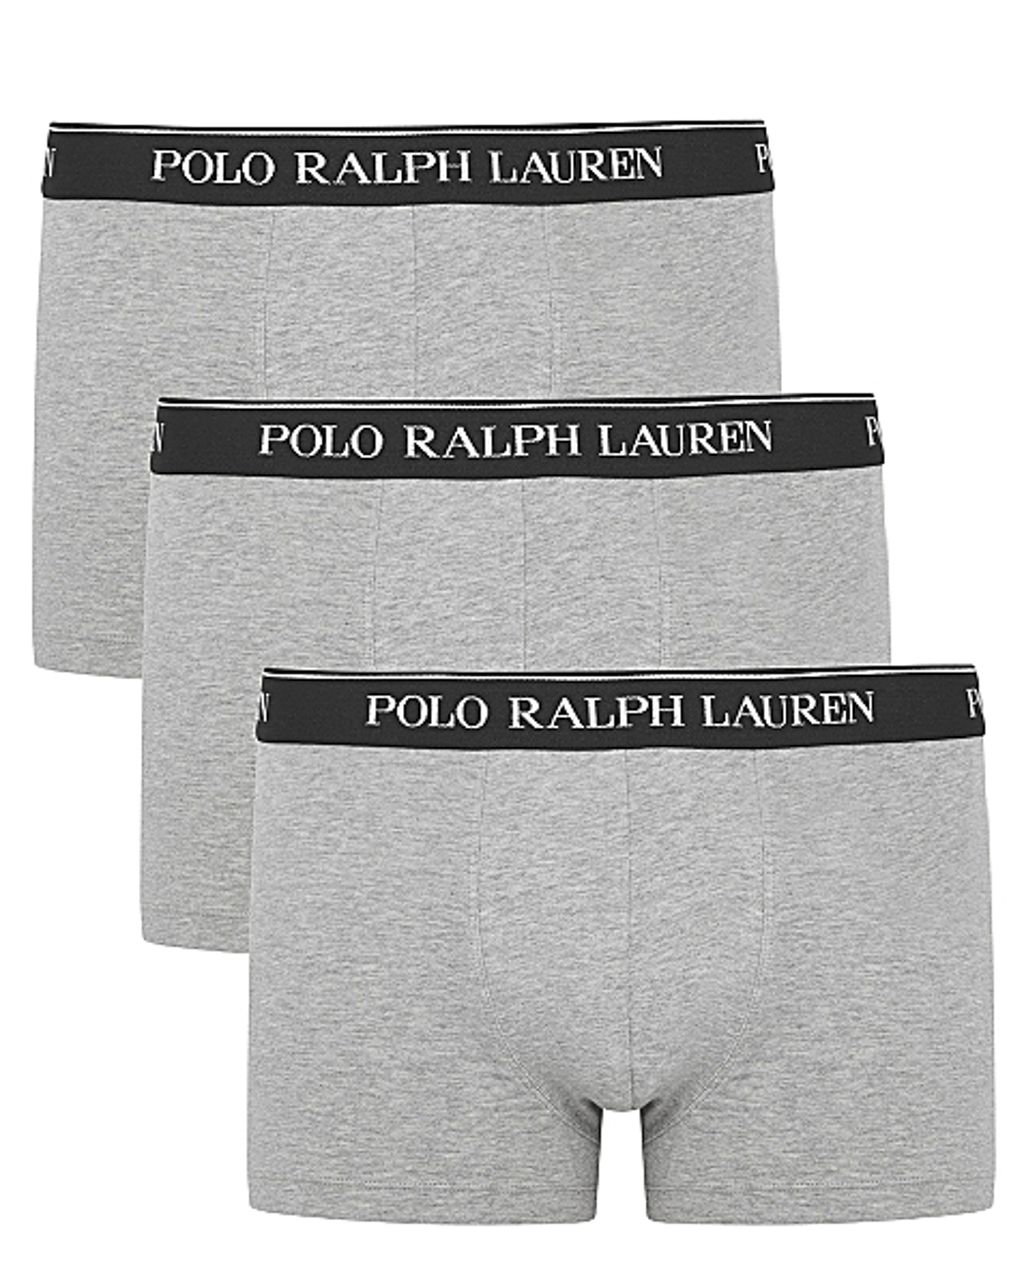 Polo Ralph Lauren Boxershort Grijs 078603-001-L